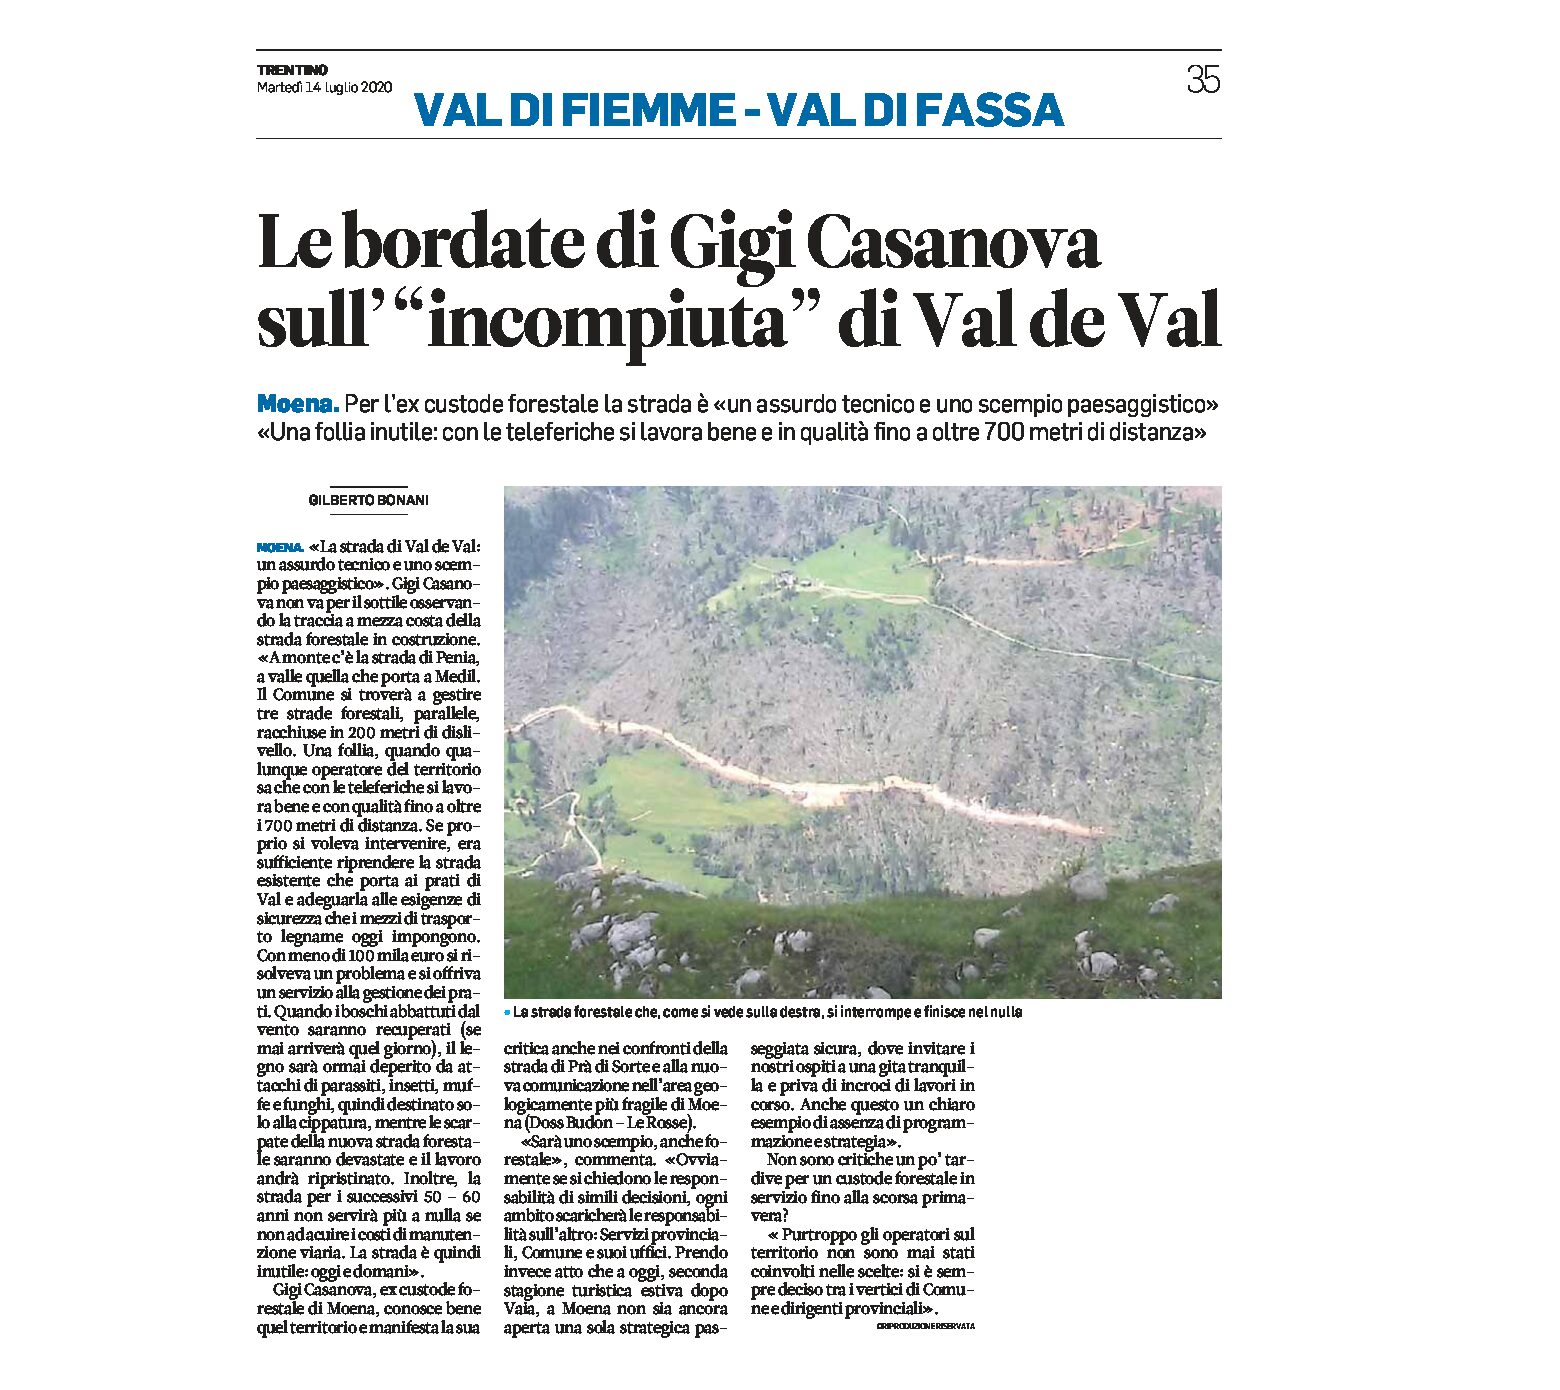 Moena: Casanova sull’incompiuta di Val de Val “un assurdo tecnico e uno scempio paesaggistico”